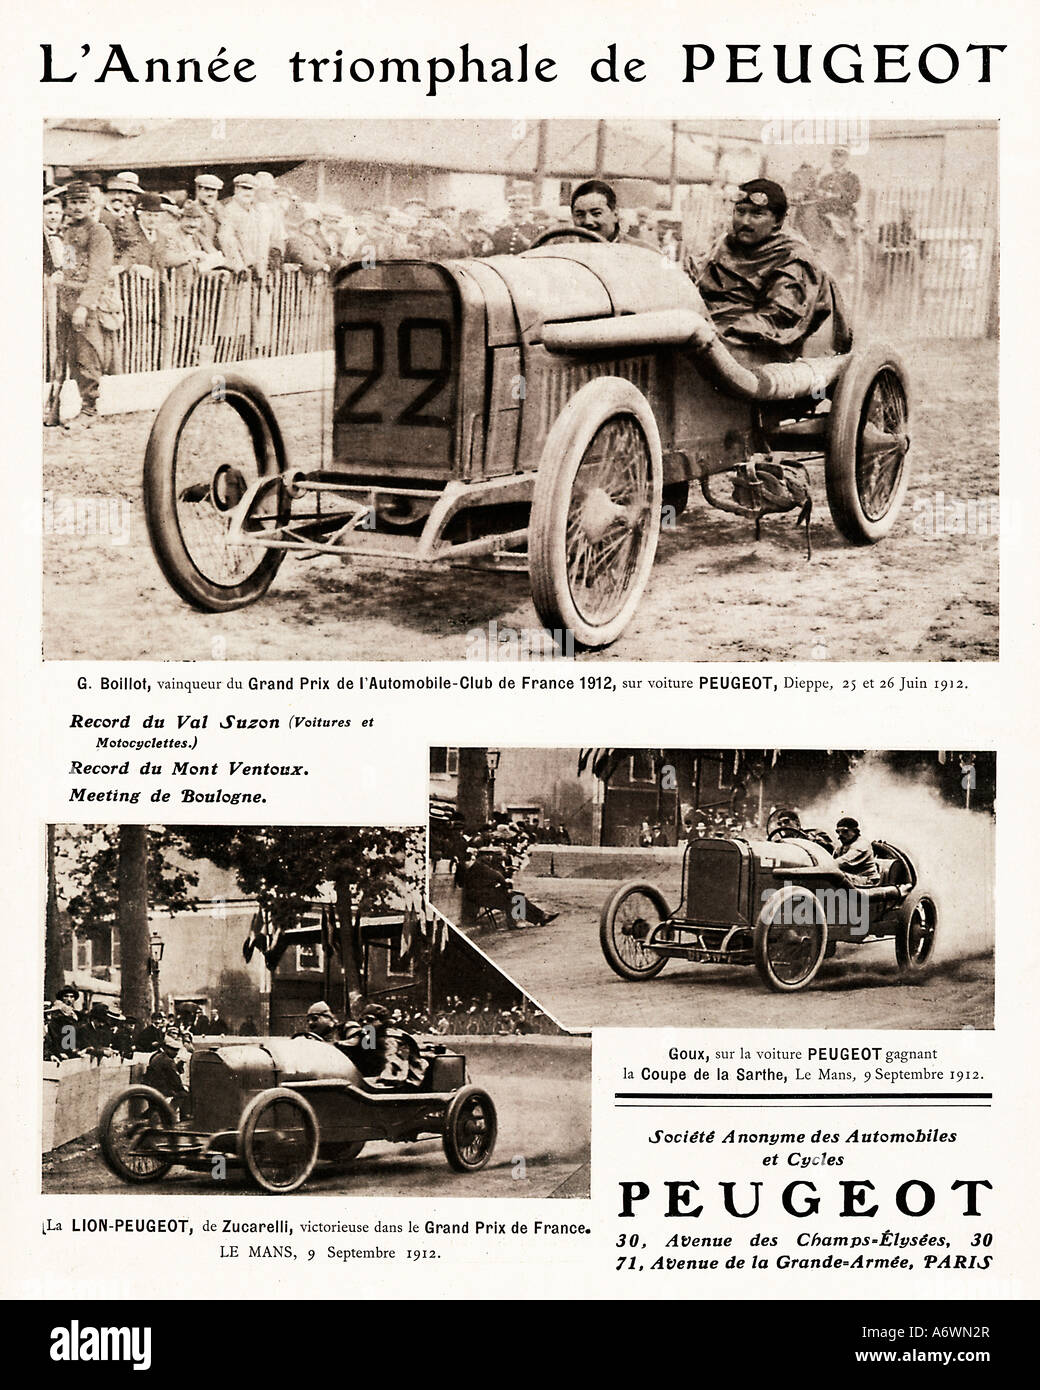 Peugeot Racing Anno 1912 con Boillot vincere il Gran Premio di Francia a Dieppe Zucarelli e Goux a Le Mans Foto Stock